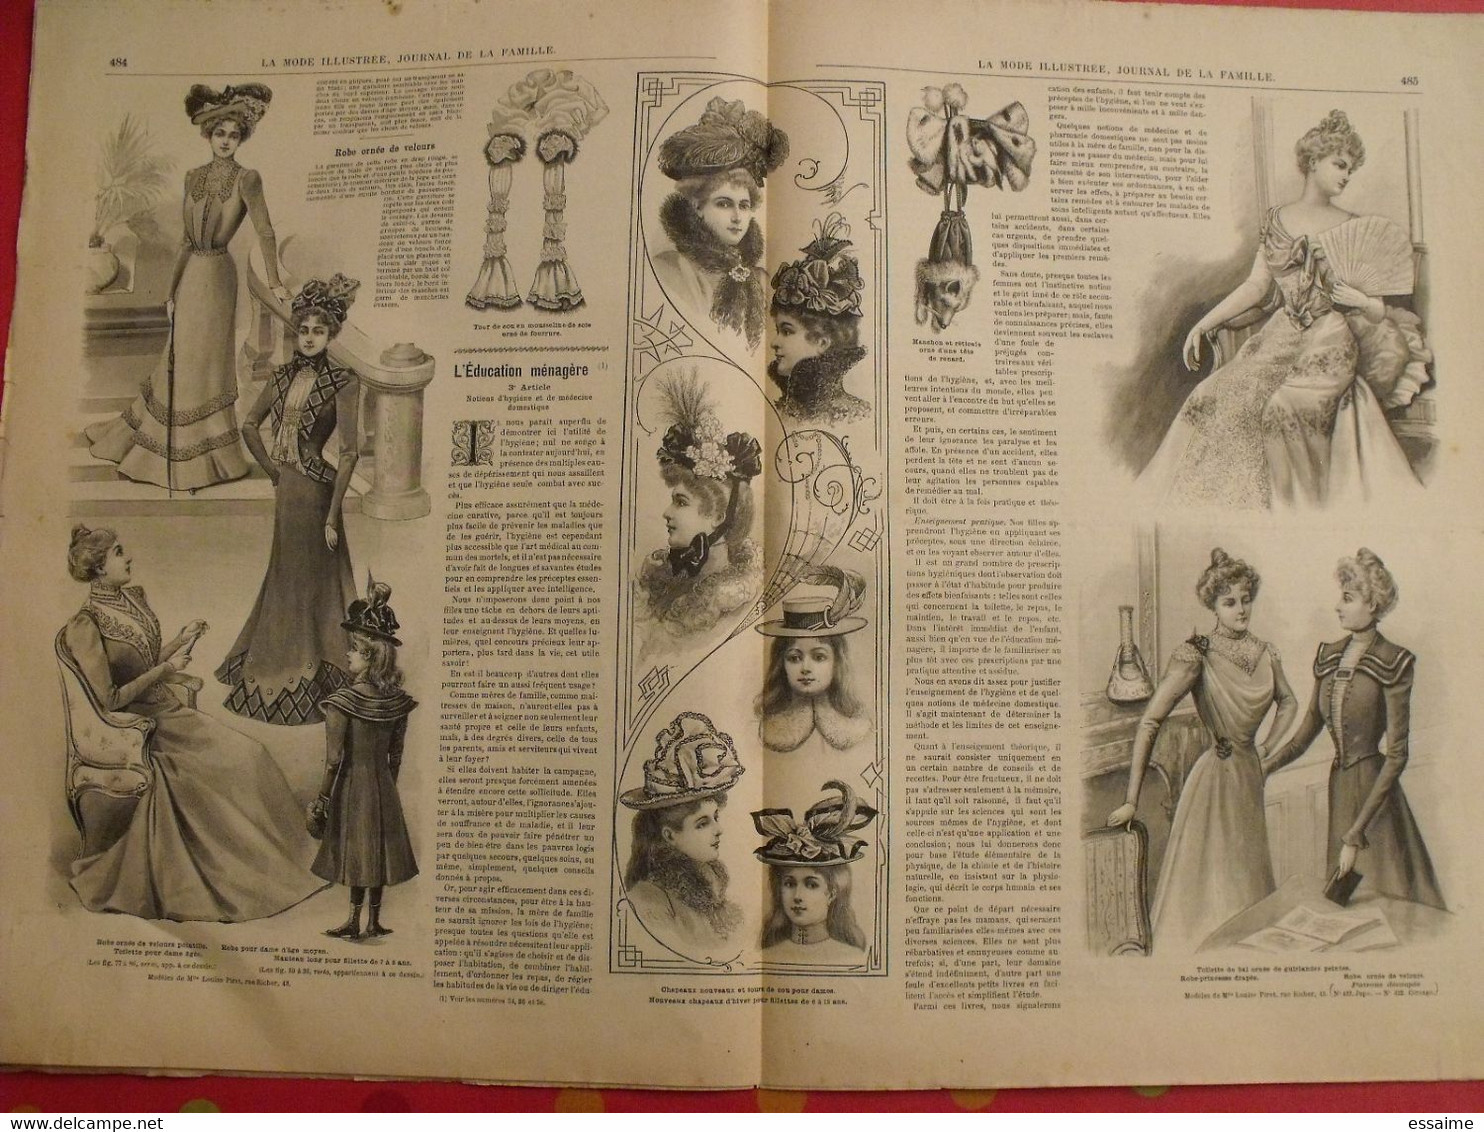 5 revues la mode illustrée, journal de la famille.  n° 38,39,40,41,47 de 1899. couverture en couleur. jolies gravures